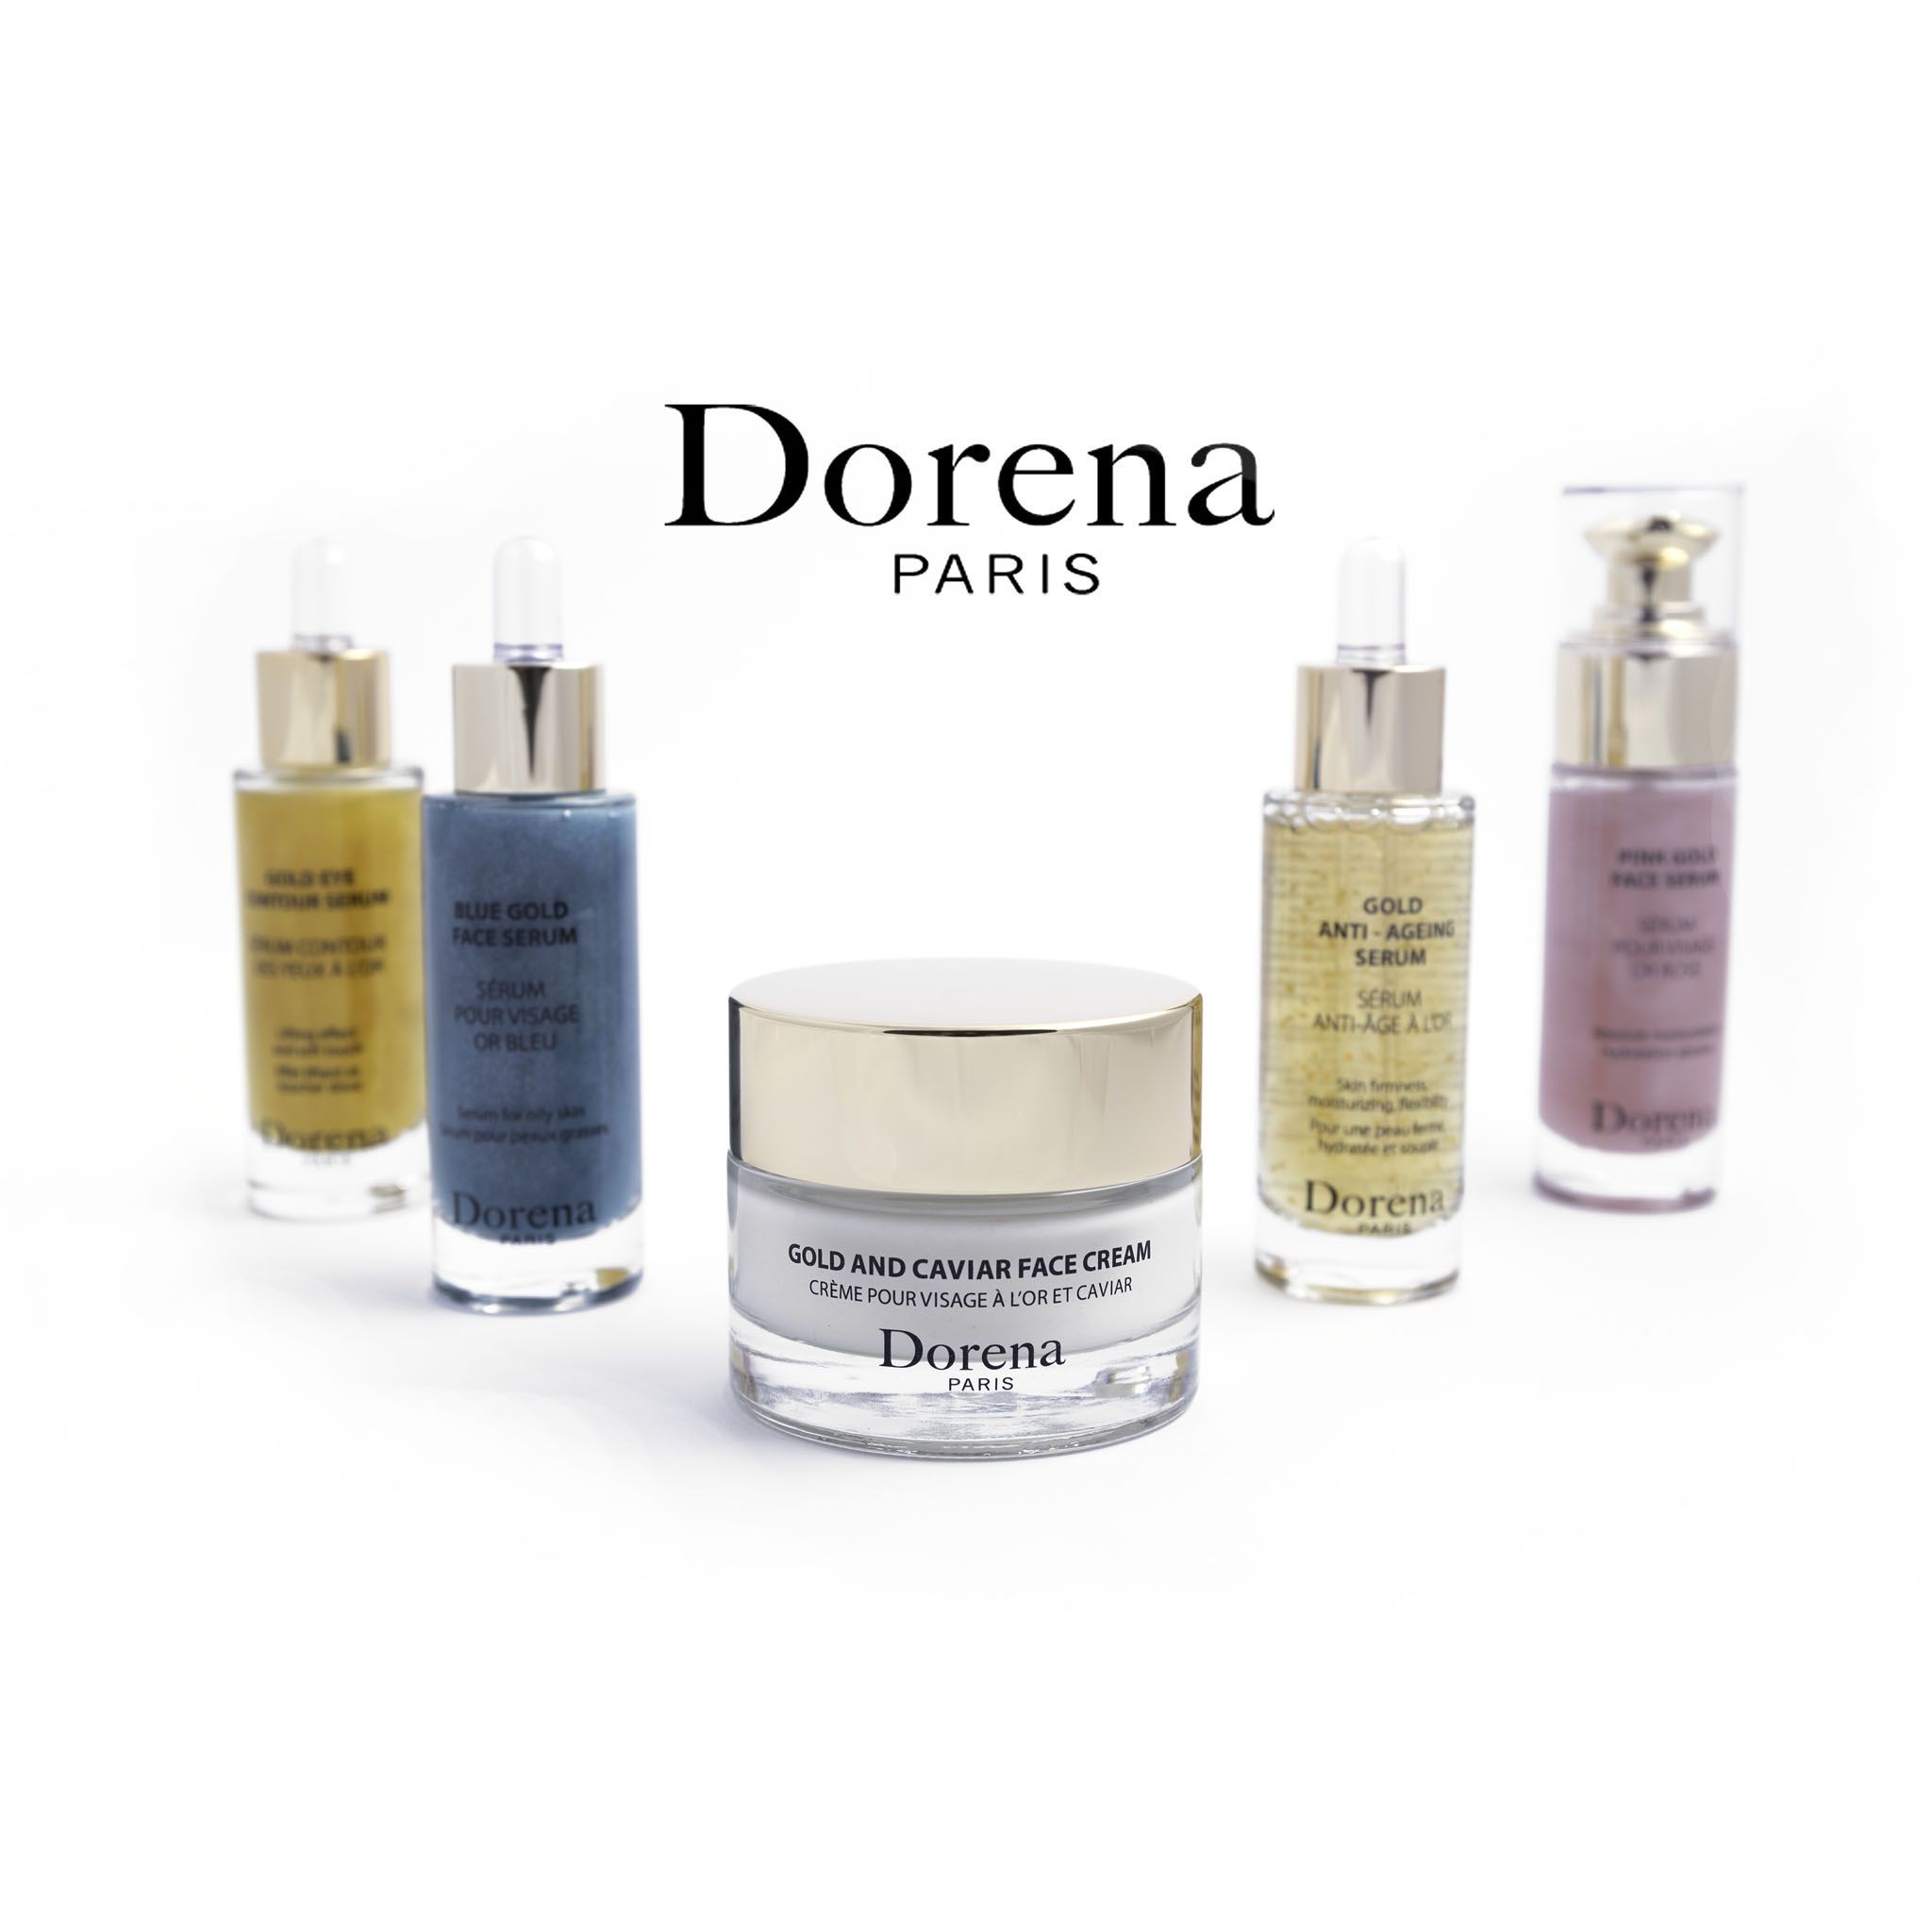 Dorena made in France